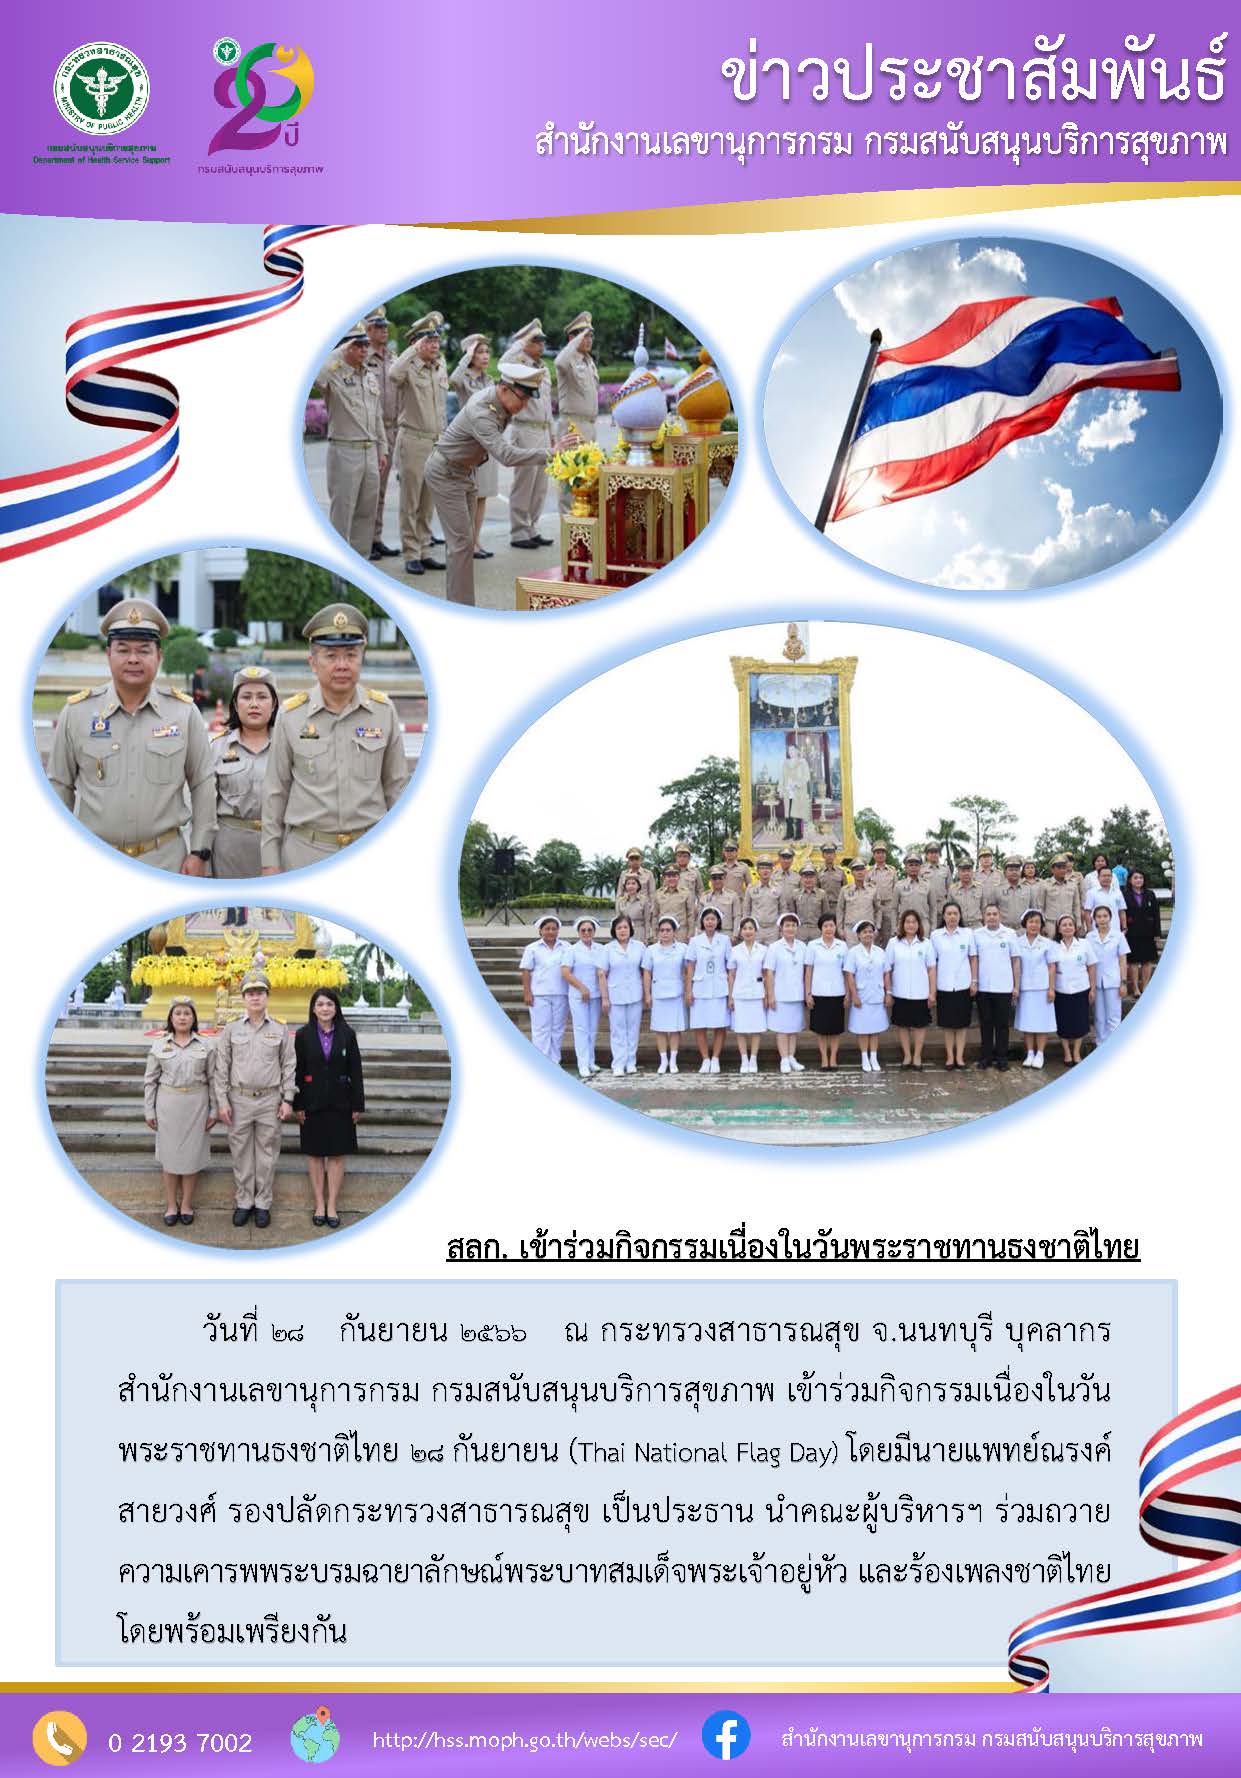 บุคลากรสำนักงานเลขานุการกรม กรมสนับสนุนบริการสุขภาพ เข้าร่วมกิจกรรมเนื่องในวันพระราชทานธงชาติไทย 28 กันยายน (Thai National Flag Day):